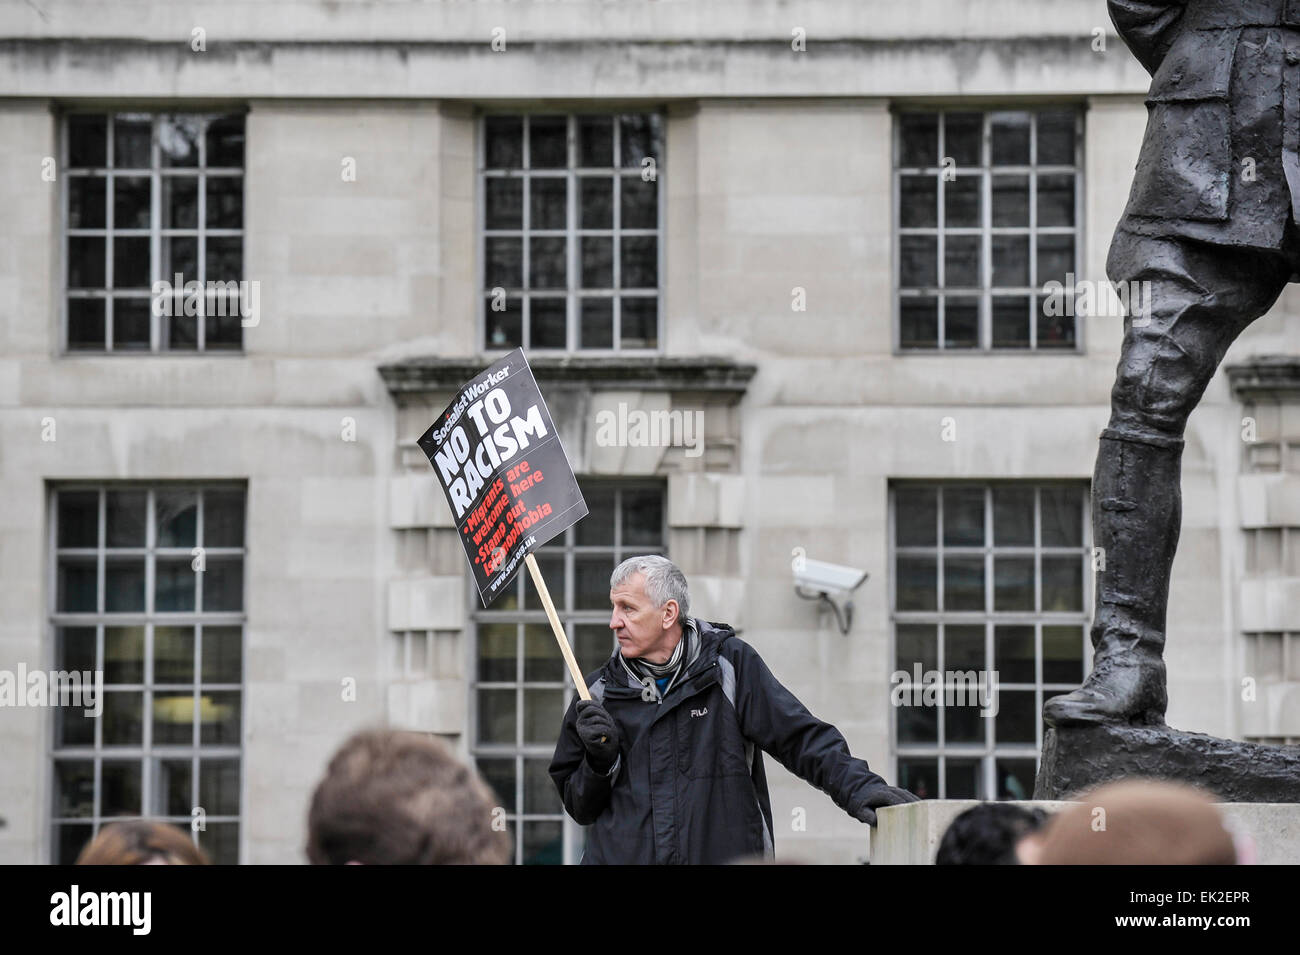 Antifaschisten demonstrieren gegen Pergida in Whitehall. Stockfoto